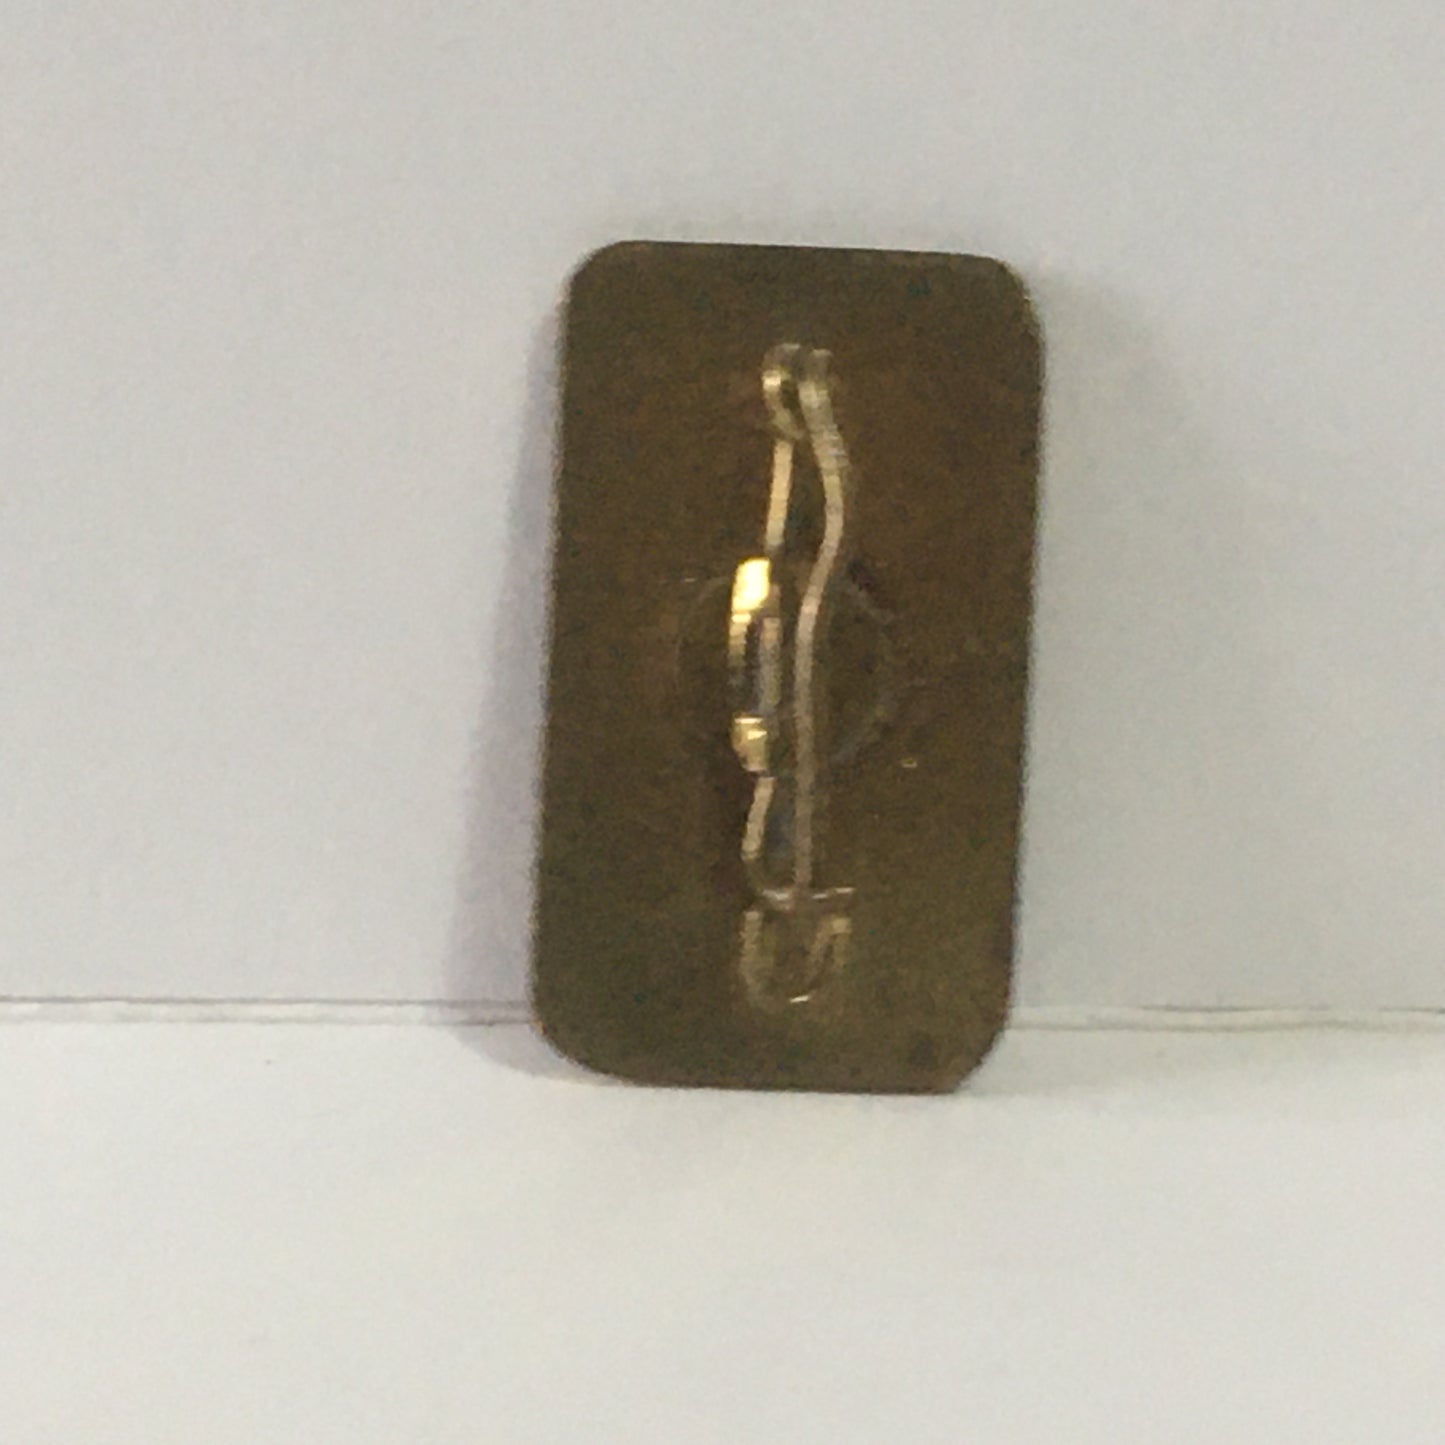 Ferrari, Gold Color Metal Brooch with Ferrari Emblem